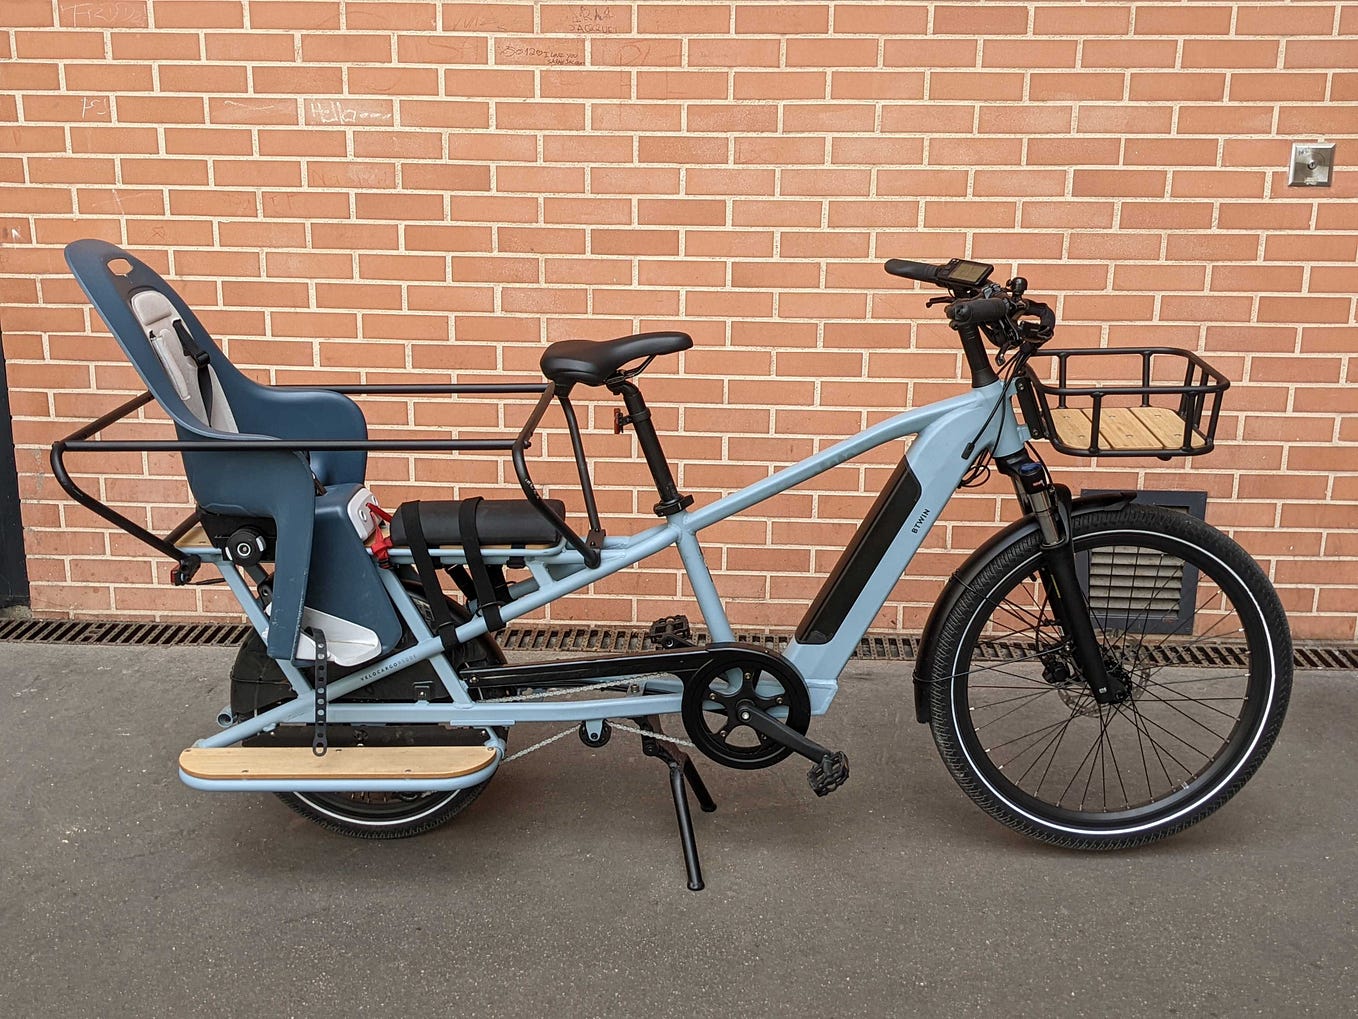 Test du vélo cargo longtail électrique R500 de Decathlon